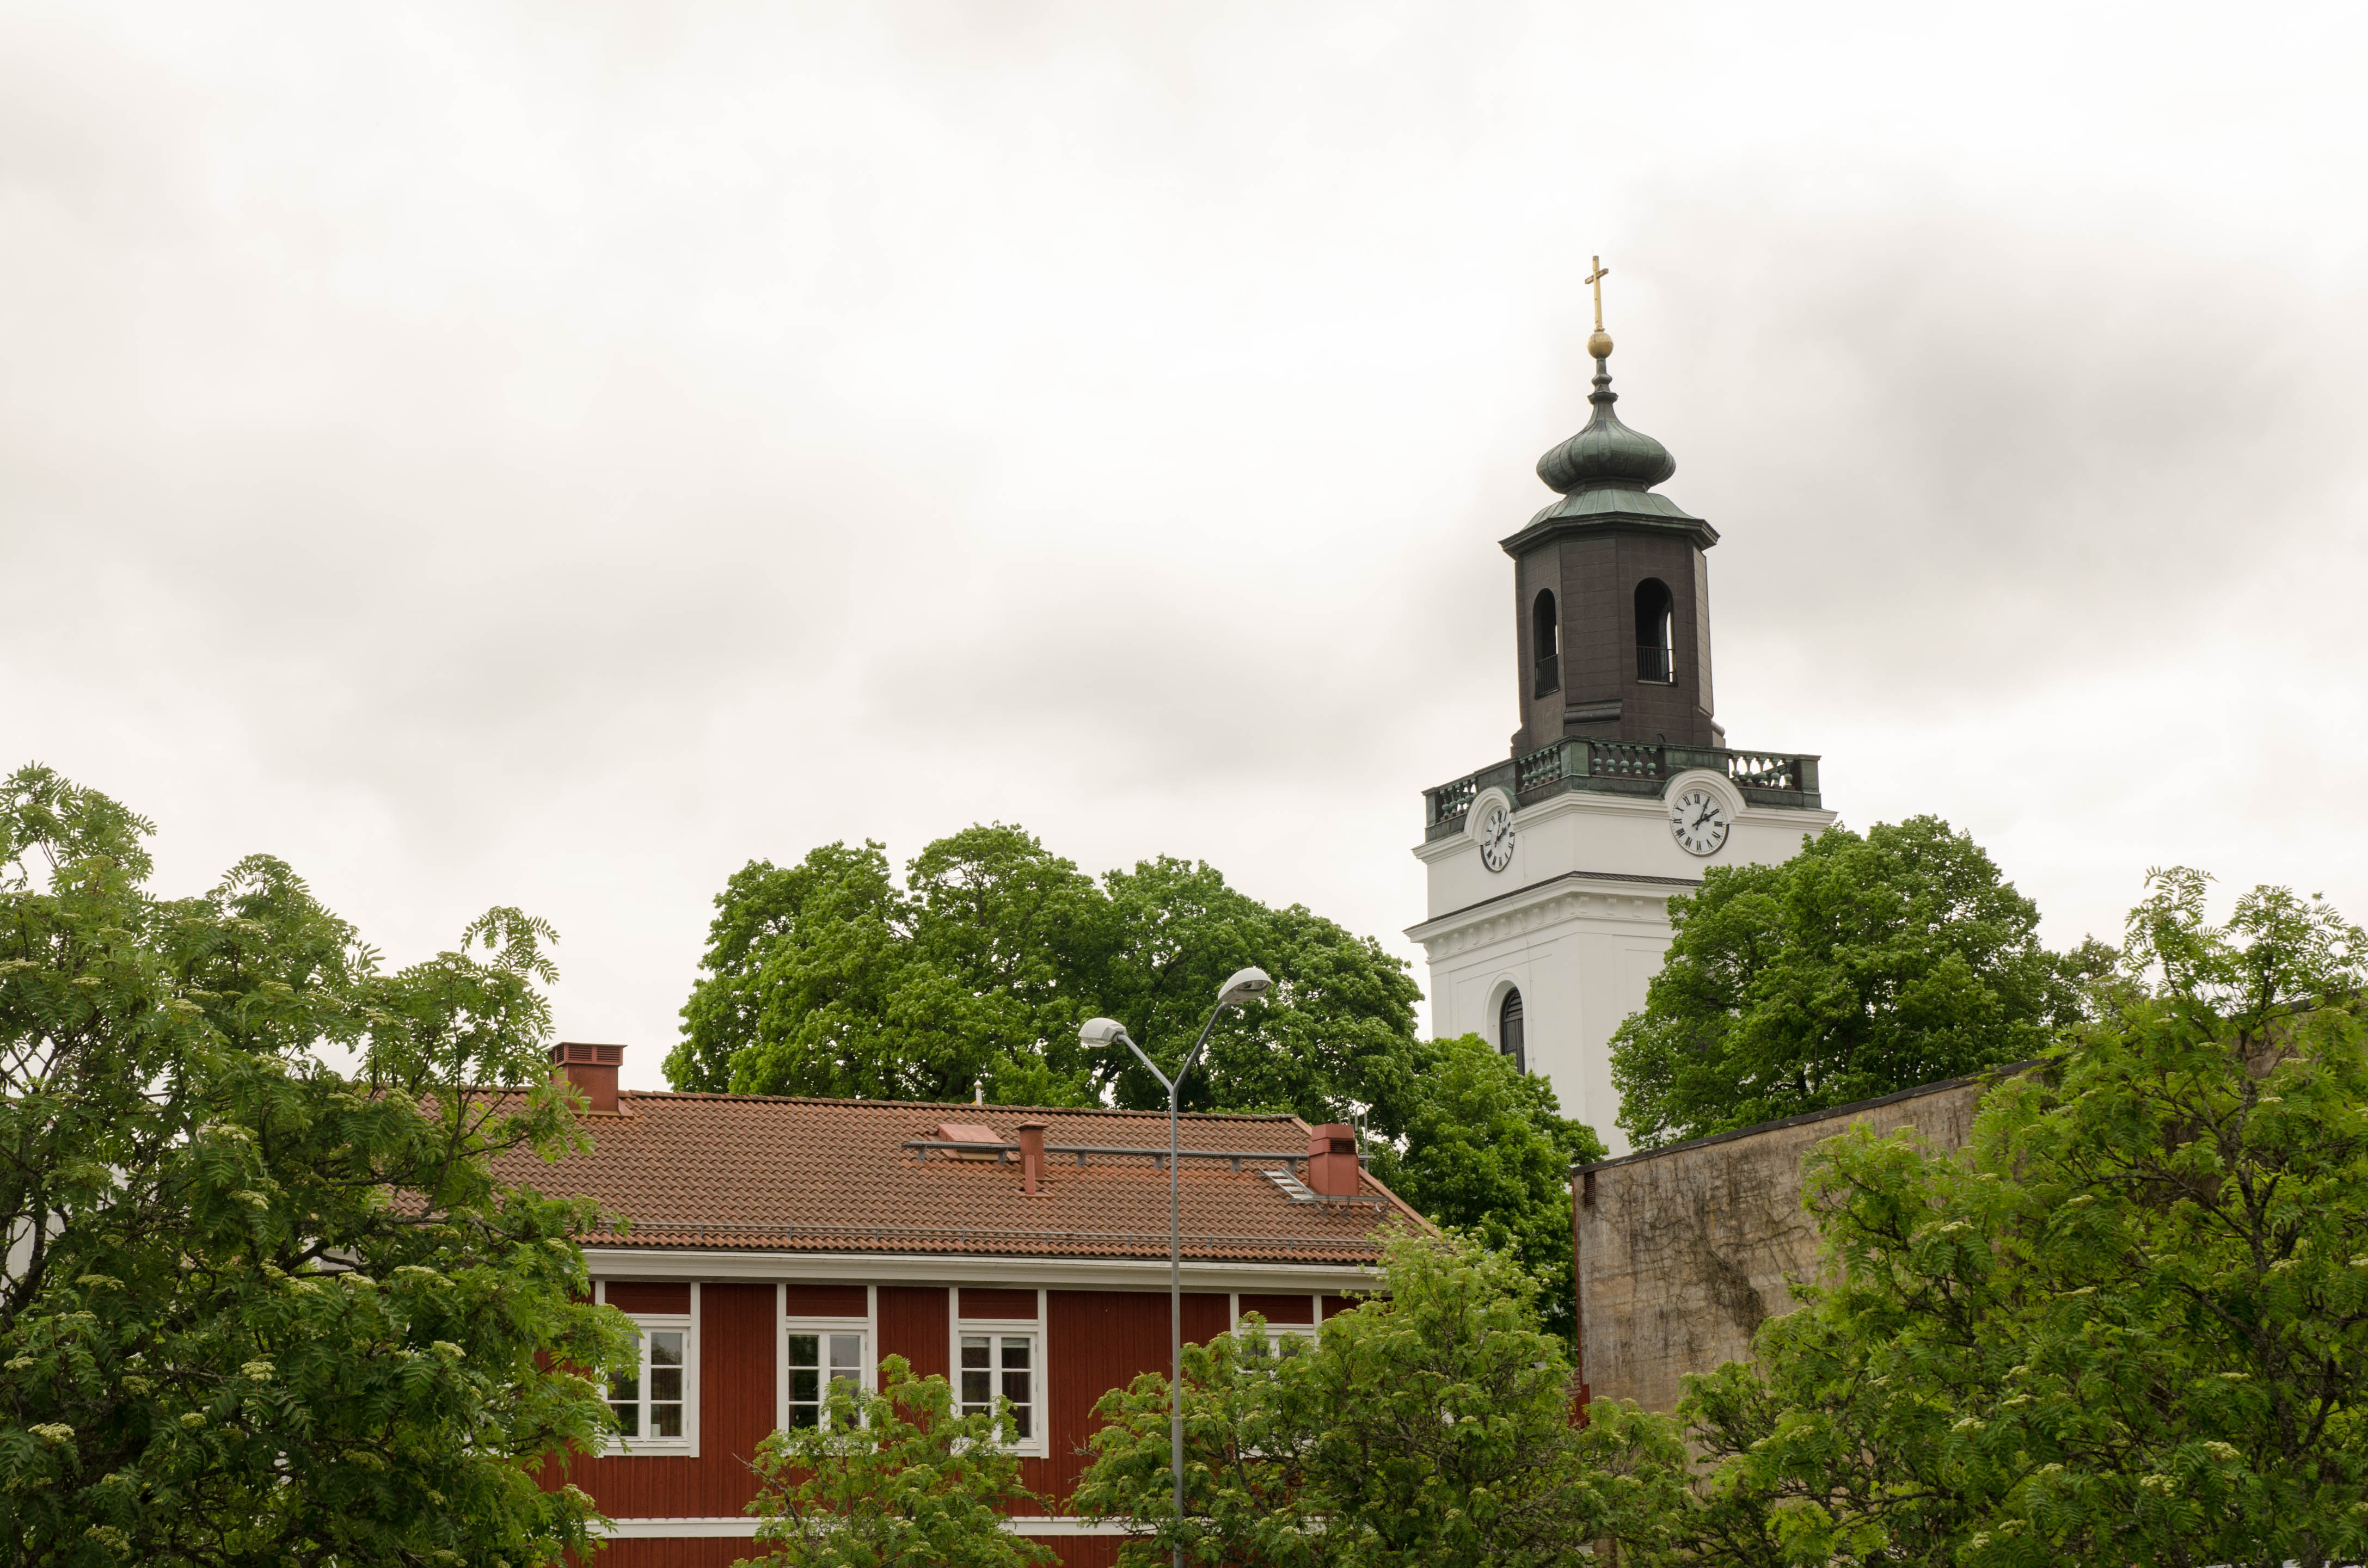 Eksjö kyrkas torn med Kyrkbacksgården framför.